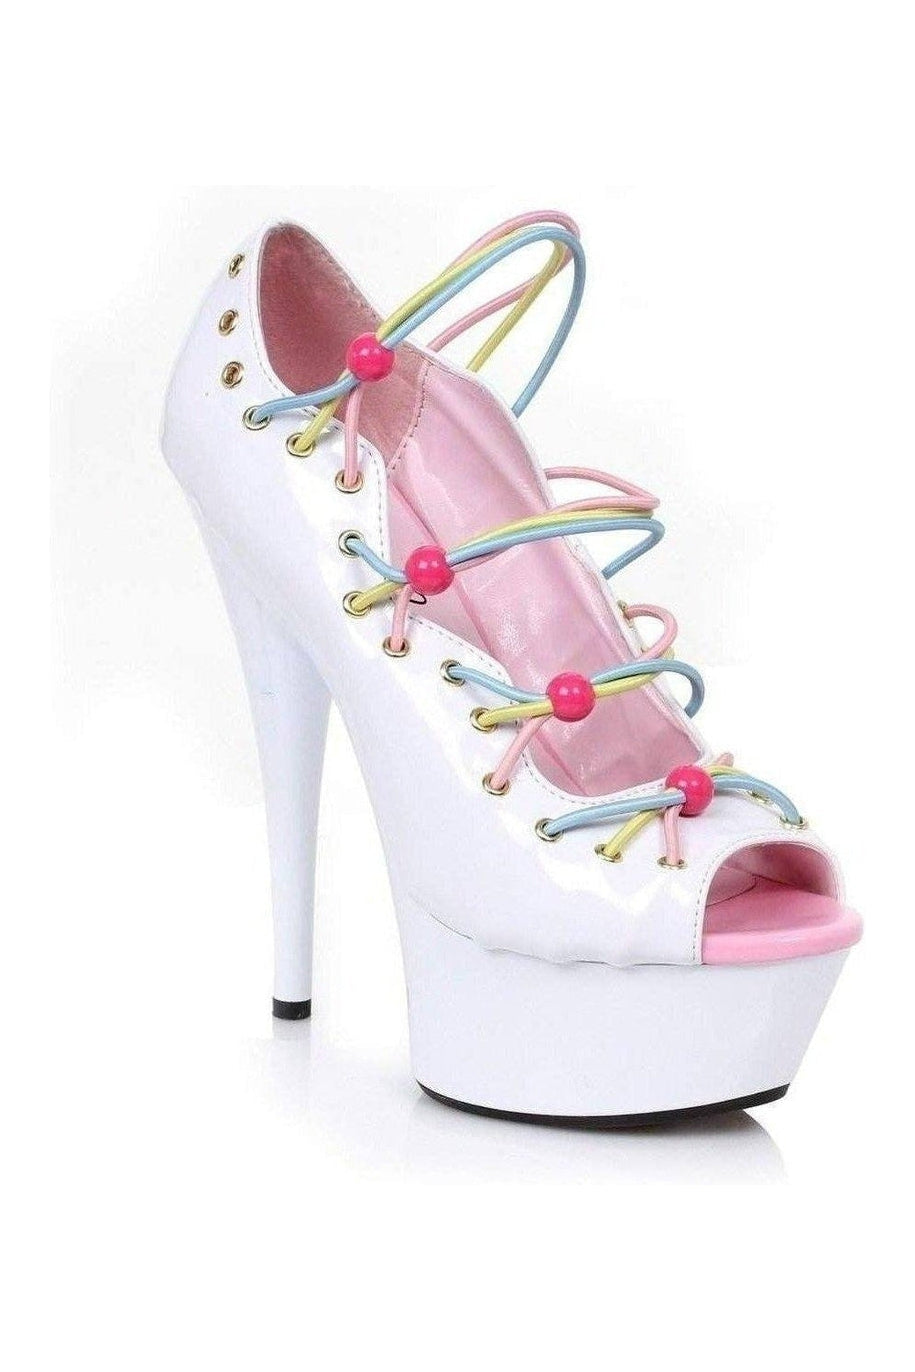 Ellie Shoes White Pumps Platform Stripper Shoes | Buy at Sexyshoes.com